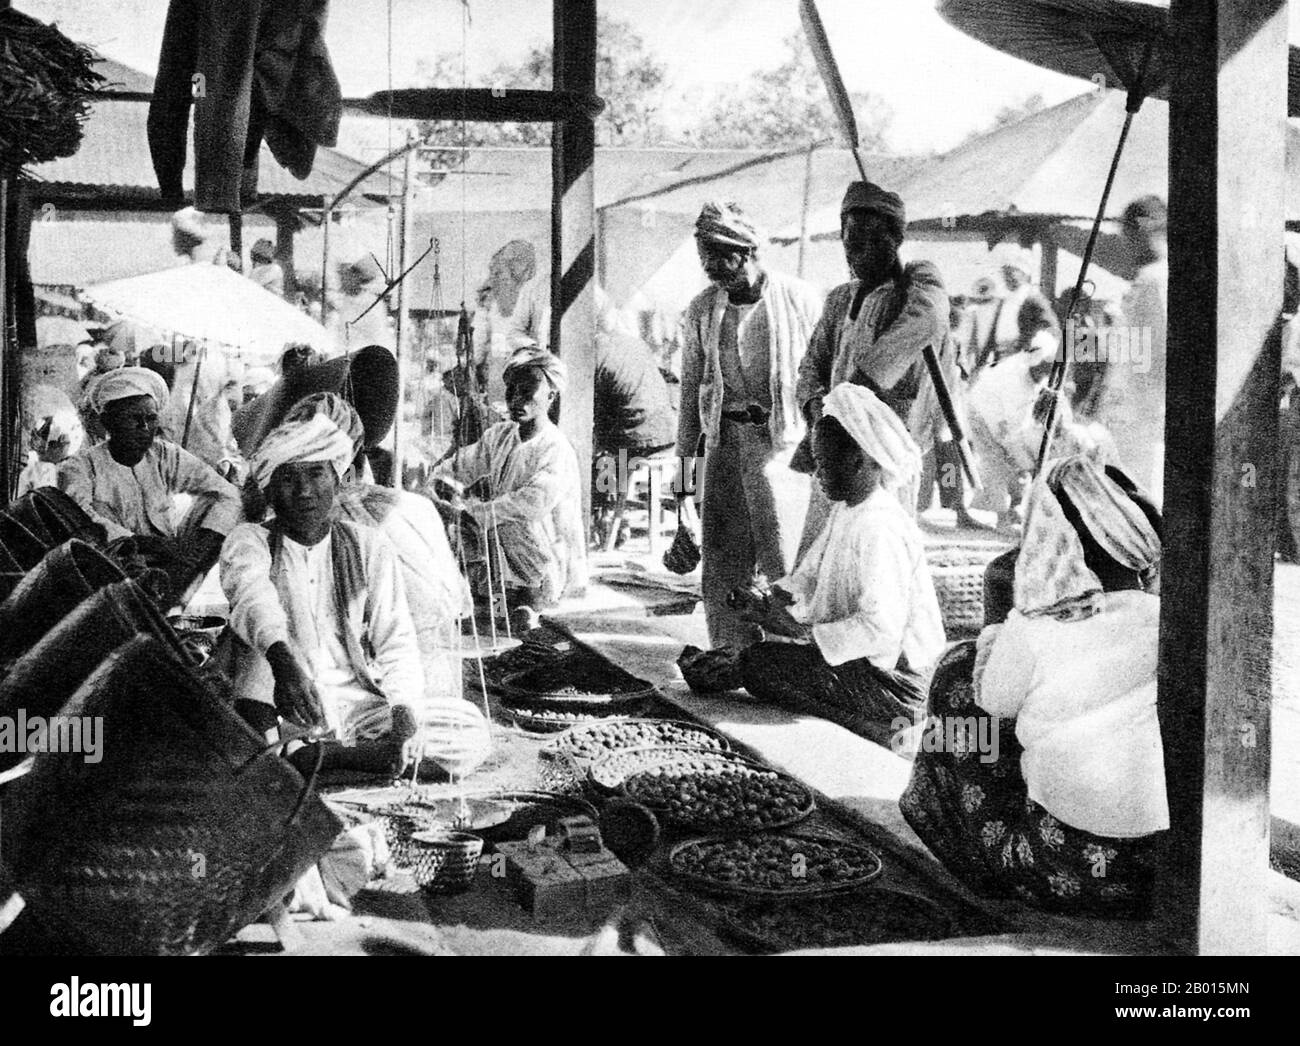 Birma/Myanmar: Ein Marktplatz in Yawnghwe, Shan State, c. 1920er Jahre. Die britische Eroberung Burmas begann 1824 als Reaktion auf einen birmanischen Versuch, Indien zu erobern. Bis 1886 und nach zwei weiteren Kriegen hatte Großbritannien das ganze Land in den britischen Raj aufgenommen. Um den Handel anzukurbeln und Veränderungen zu erleichtern, brachten die Briten Inder und Chinesen, die die Burmesen schnell in städtische Gebiete verdrängten. Rangun und Mandalay haben bis heute eine große ethnische indische Bevölkerung. Es wurden Eisenbahnen und Schulen gebaut, sowie eine große Anzahl von Gefängnissen, darunter das berüchtigte Insein-Gefängnis. Stockfoto